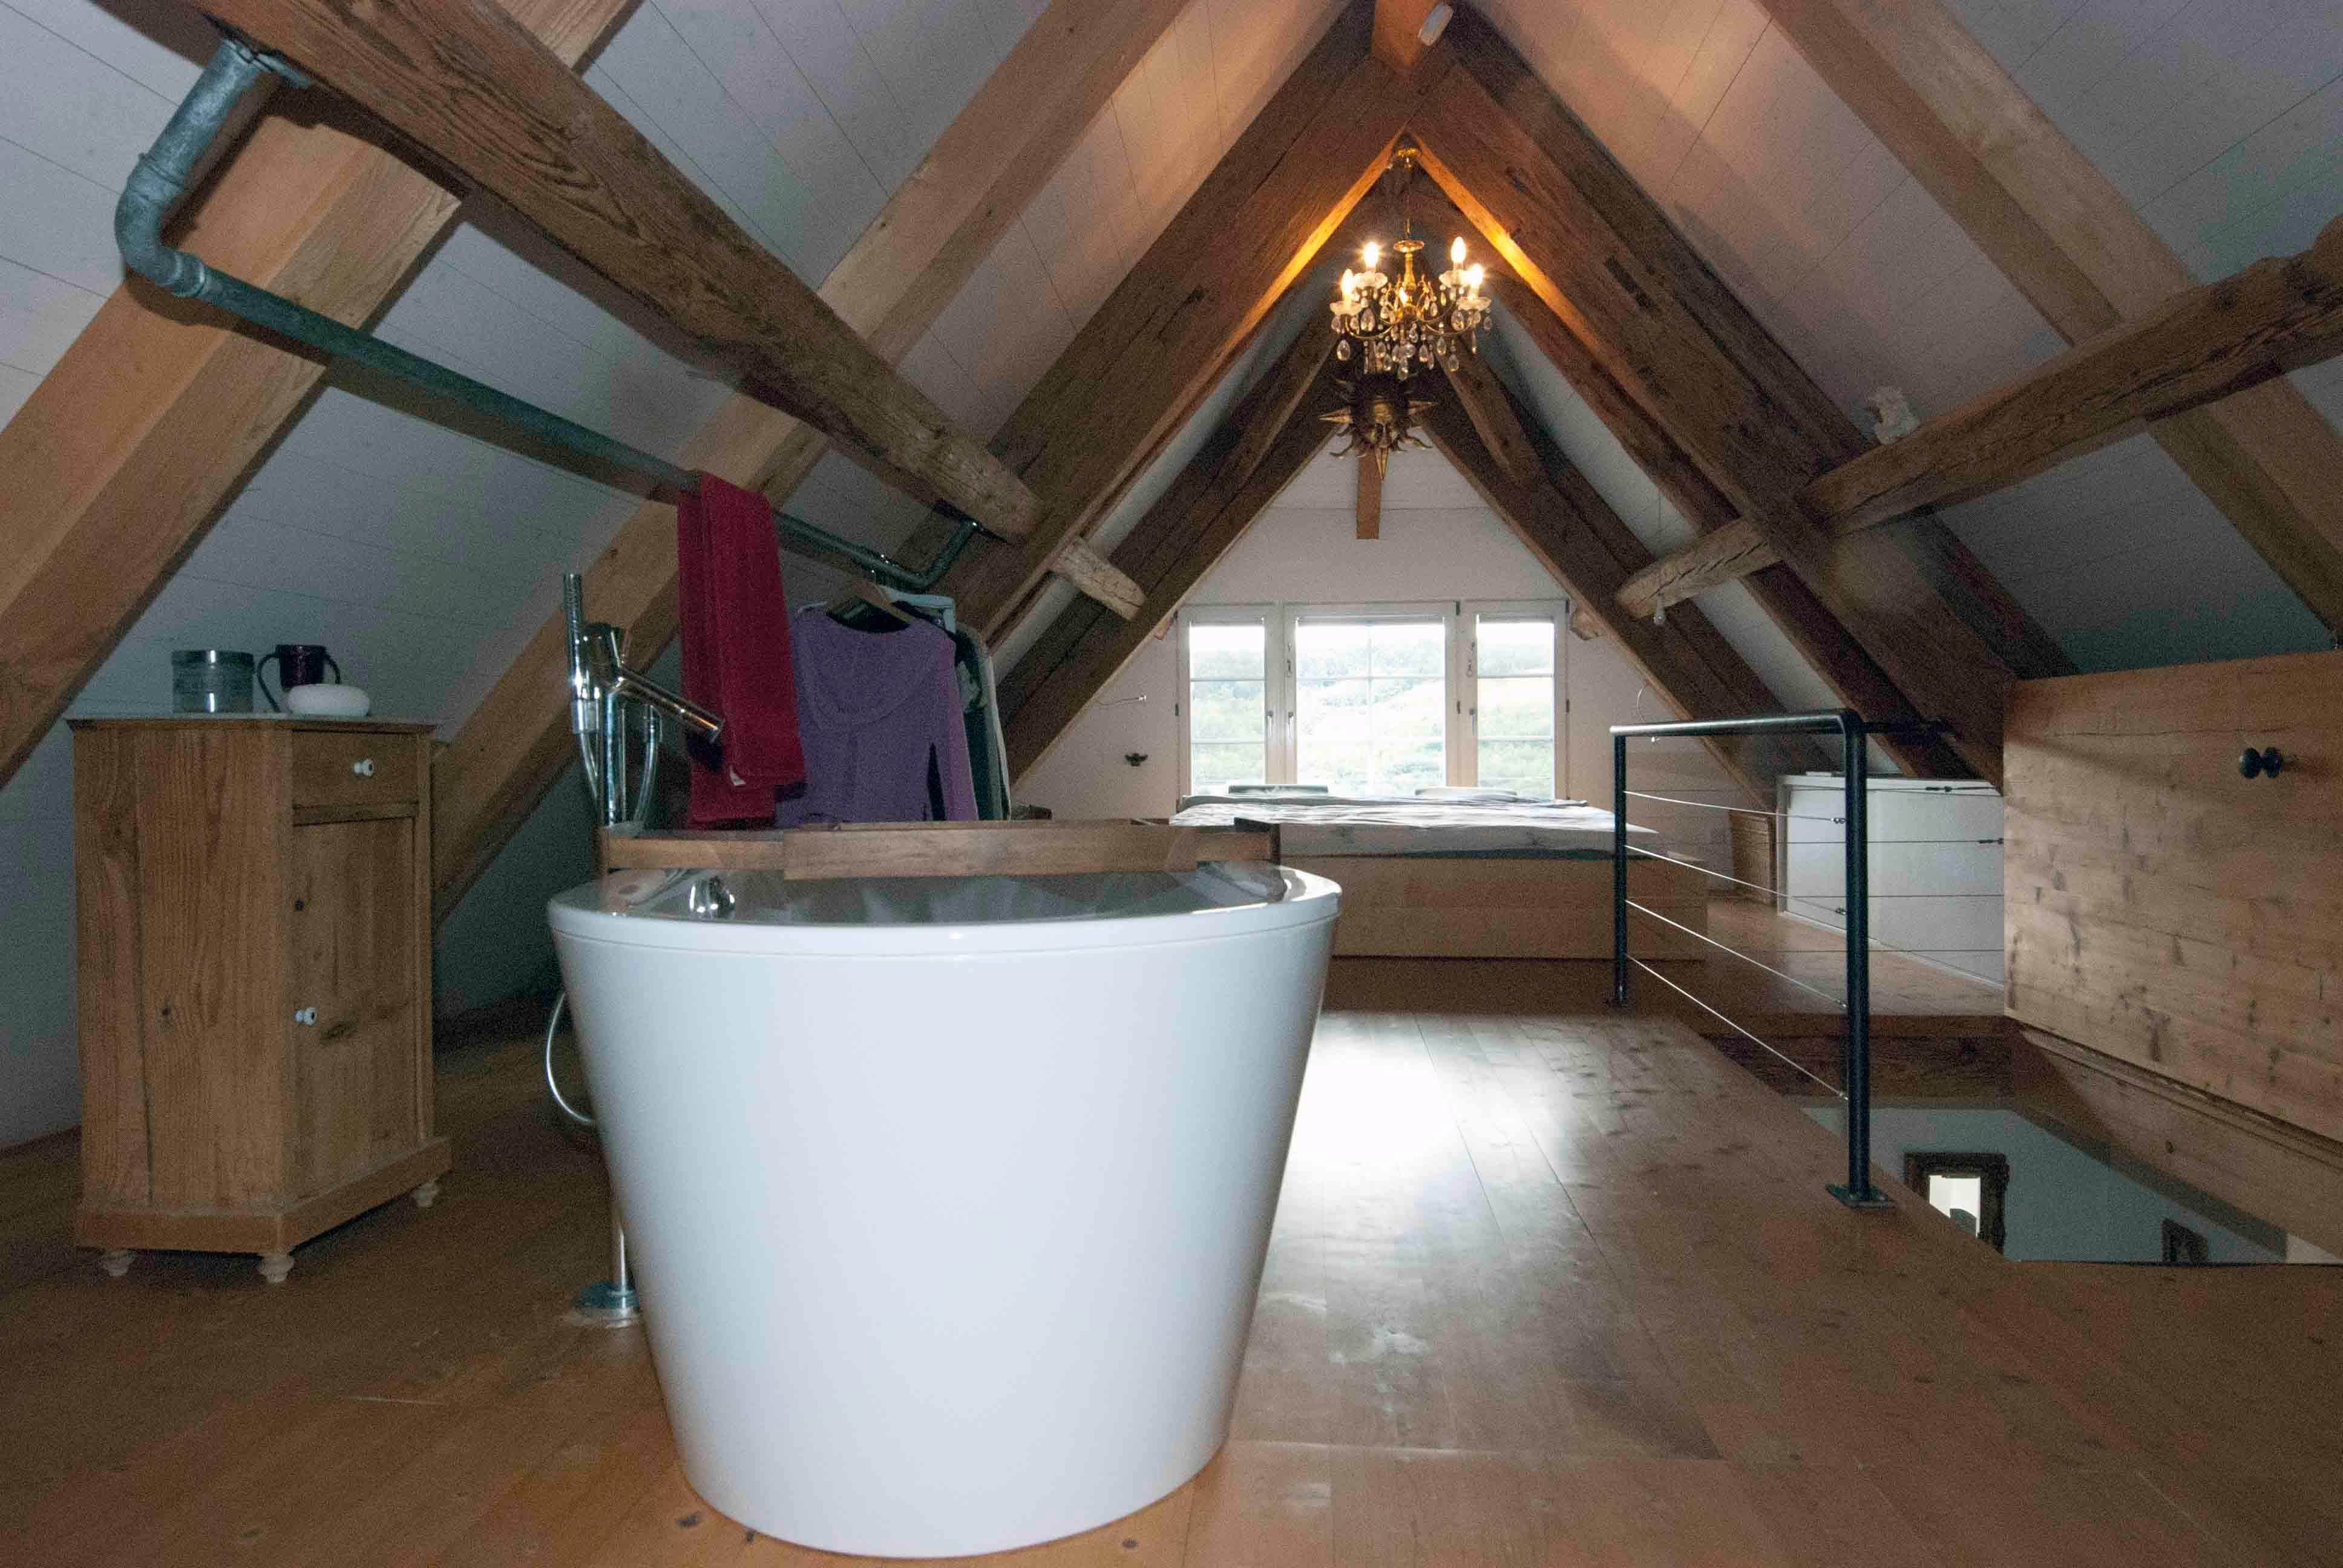  Architektur-Reportage: Umbau alte Mühle: Zuoberst befindet sich eine freistehende Badewanne